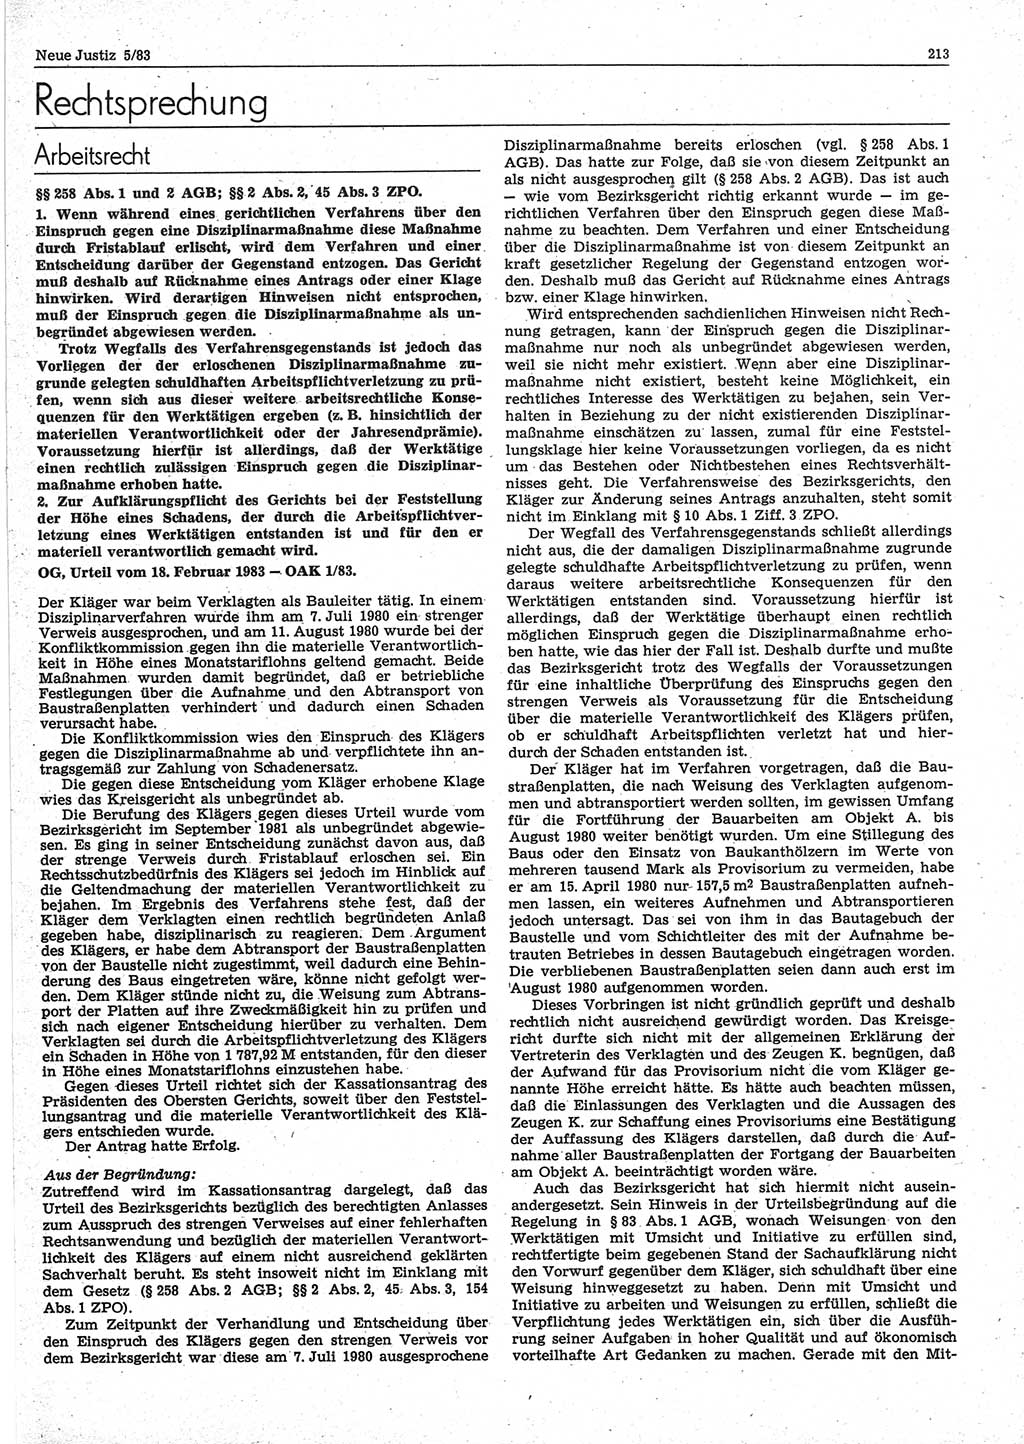 Neue Justiz (NJ), Zeitschrift für sozialistisches Recht und Gesetzlichkeit [Deutsche Demokratische Republik (DDR)], 37. Jahrgang 1983, Seite 213 (NJ DDR 1983, S. 213)